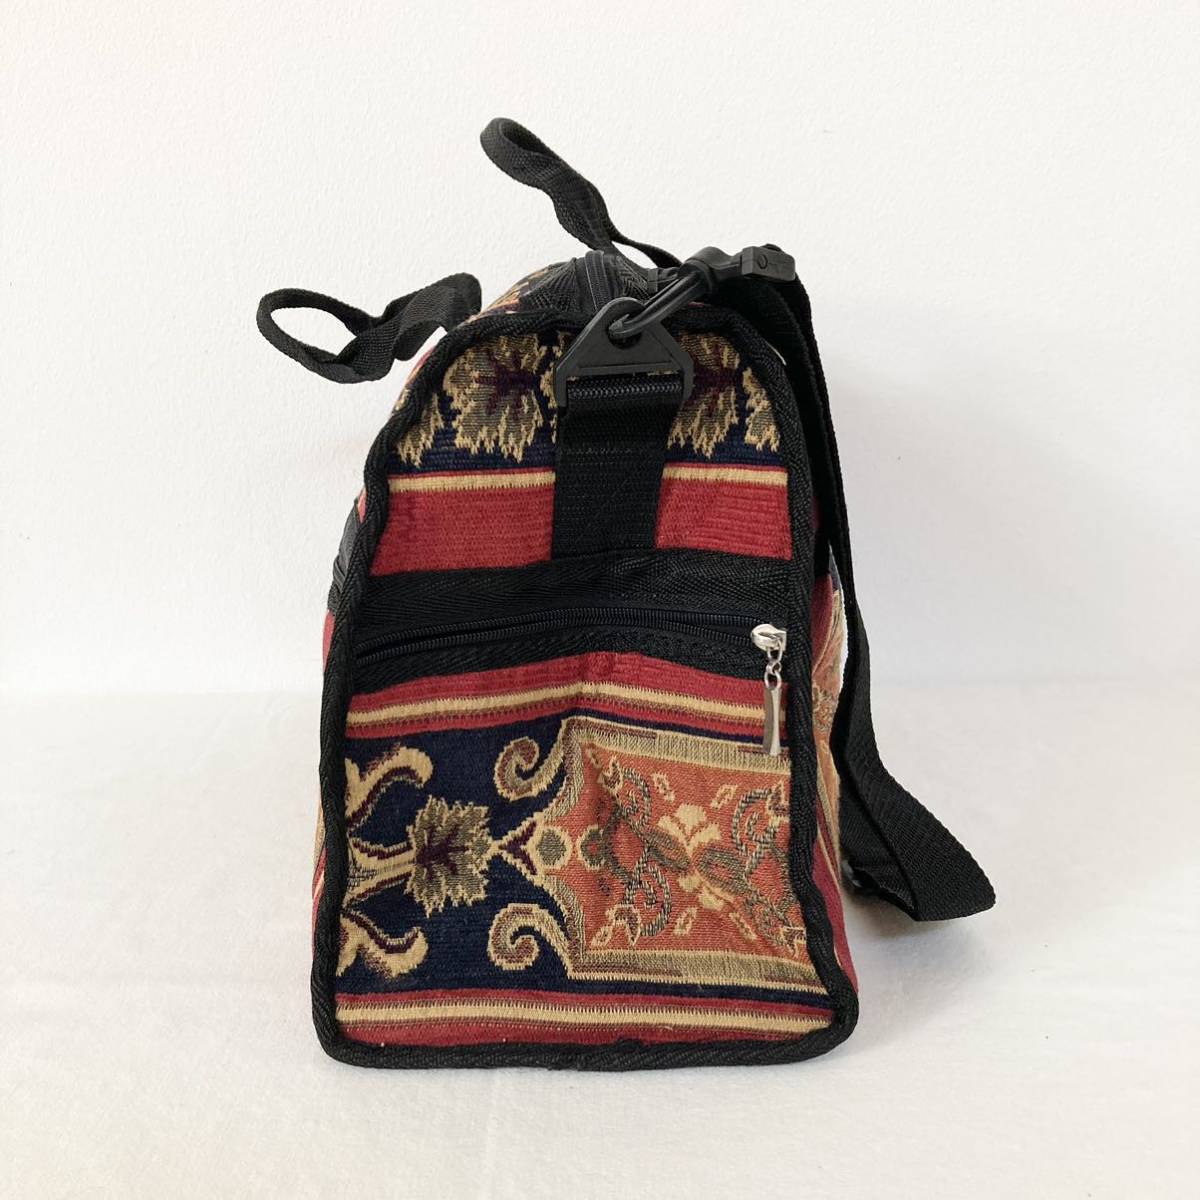  неиспользуемый   Бостон  сумка   плечо   идет в комплекте   ткань   ... ткань  подобно   дизайн   экзотичный  ... ... ...  красный   бежевый   черный  цвет   путешествие 